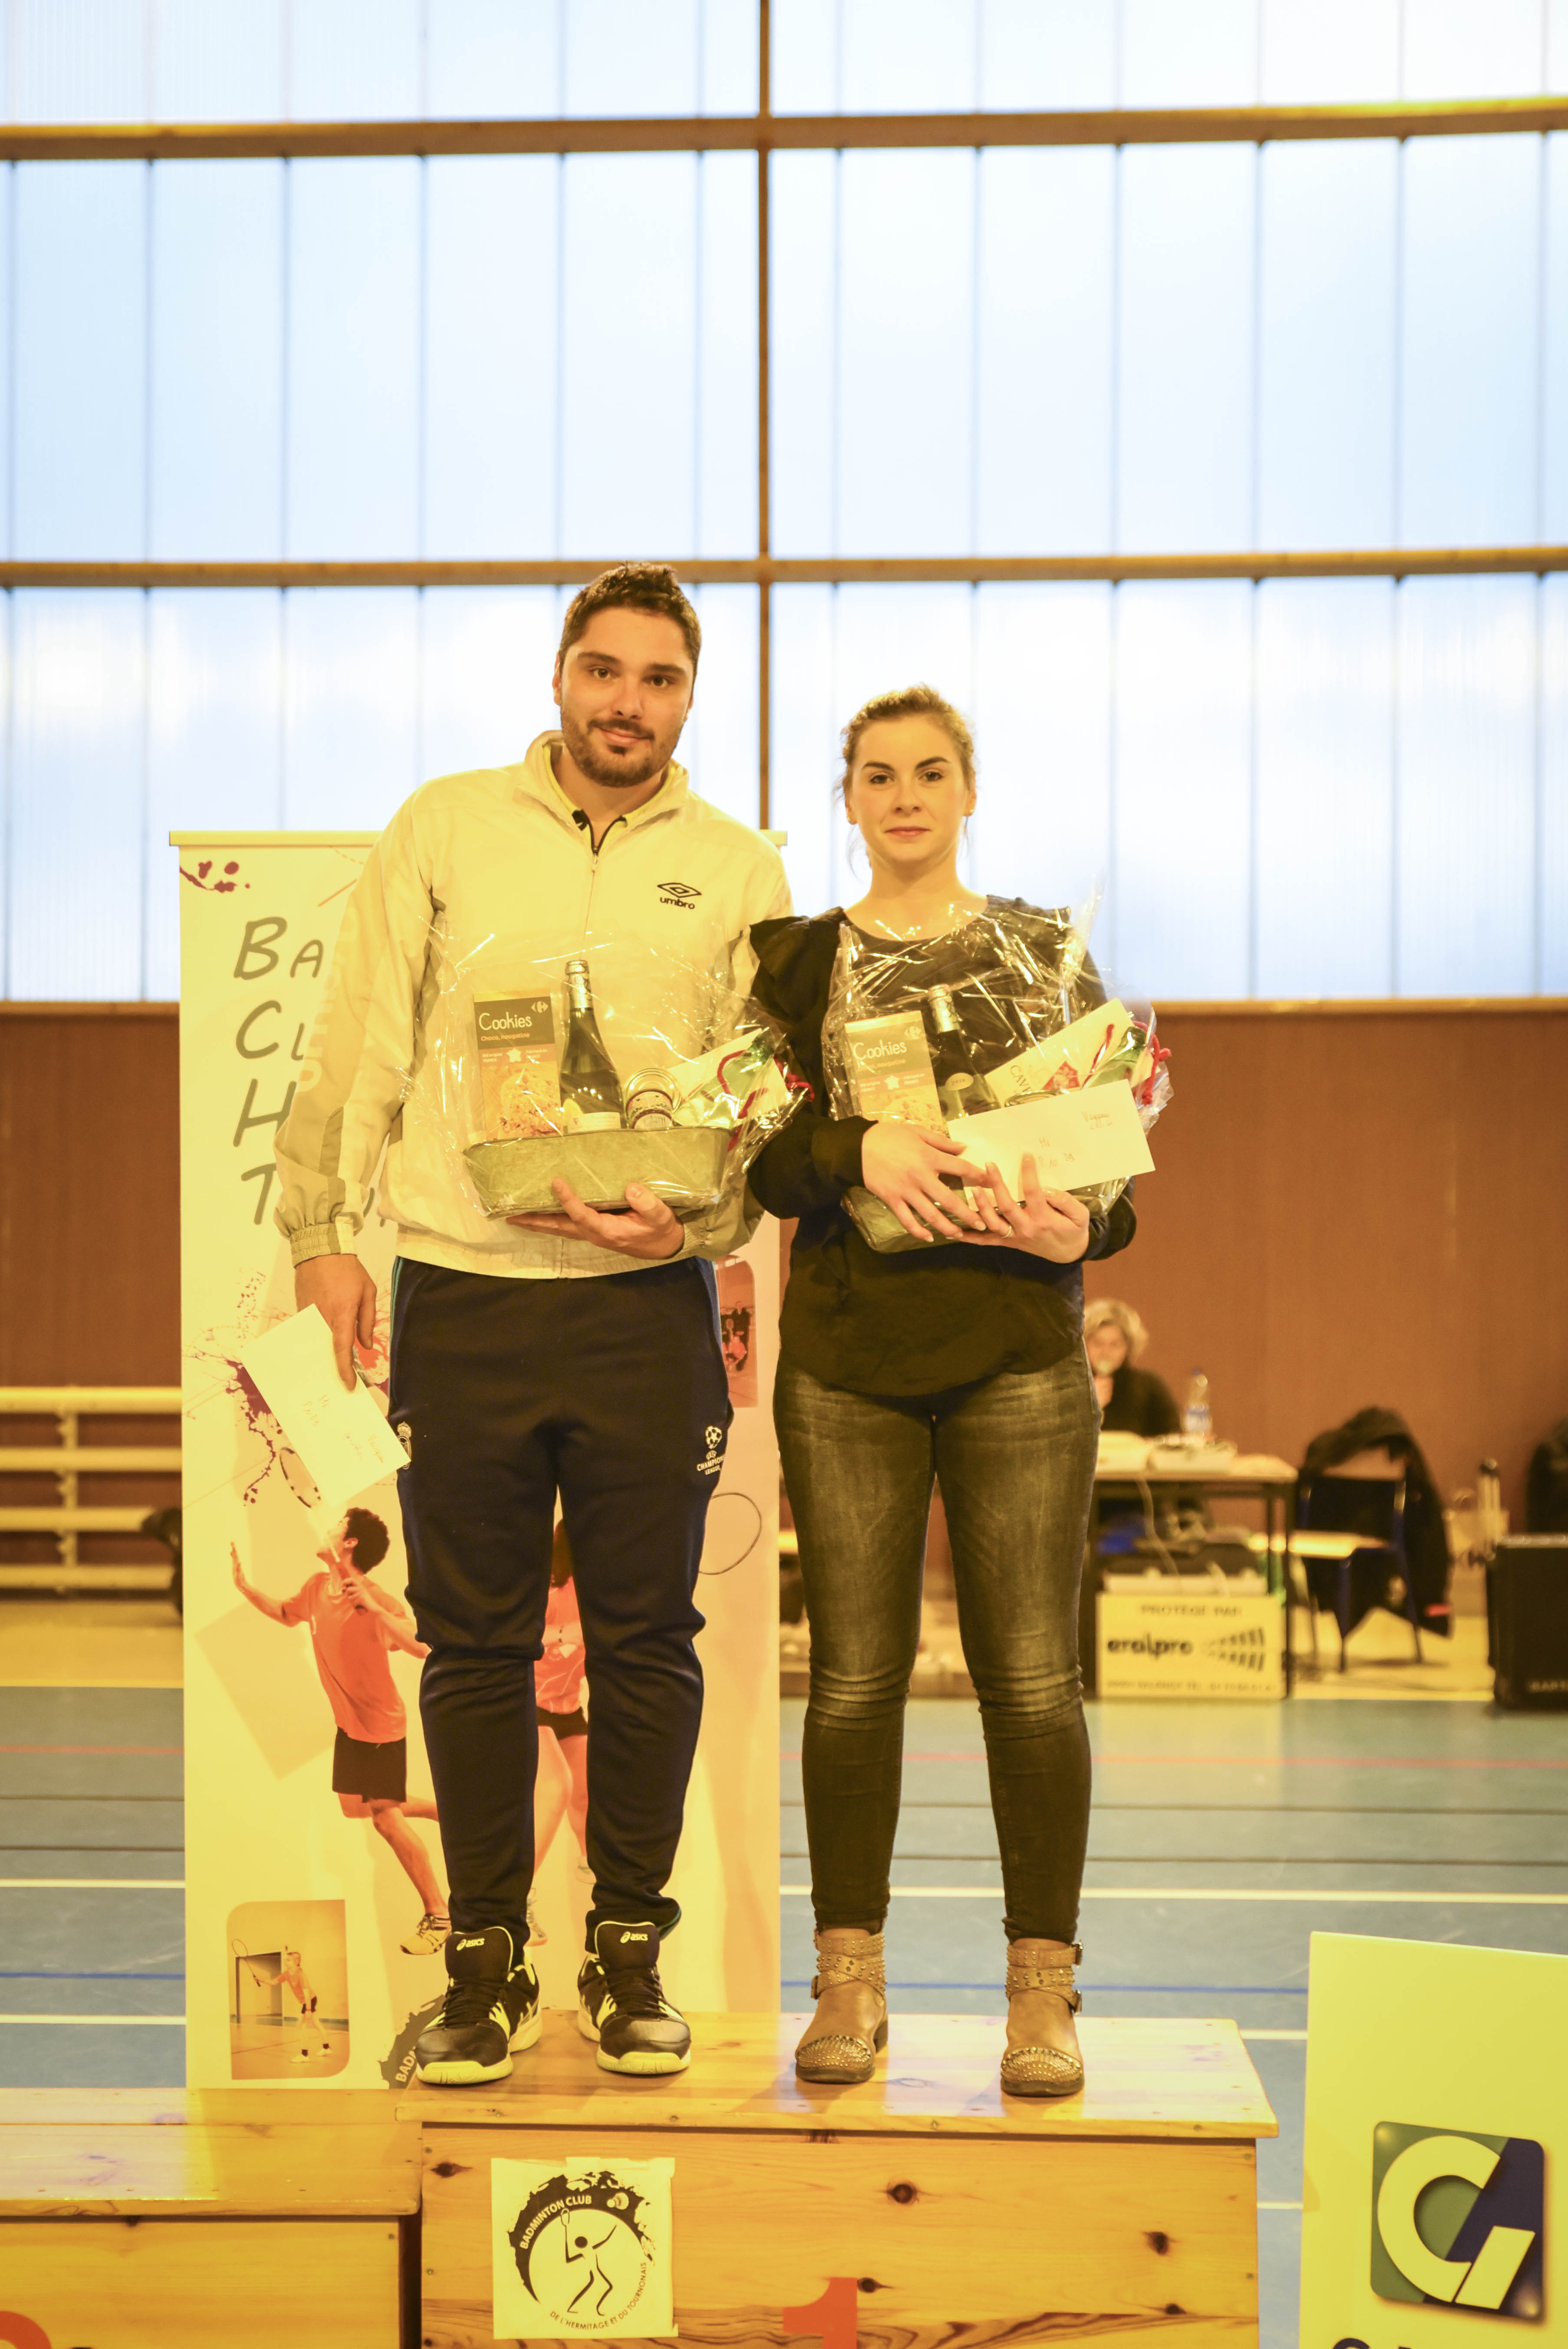 2017 12 03 - Tournoi de badminton Tournon-81